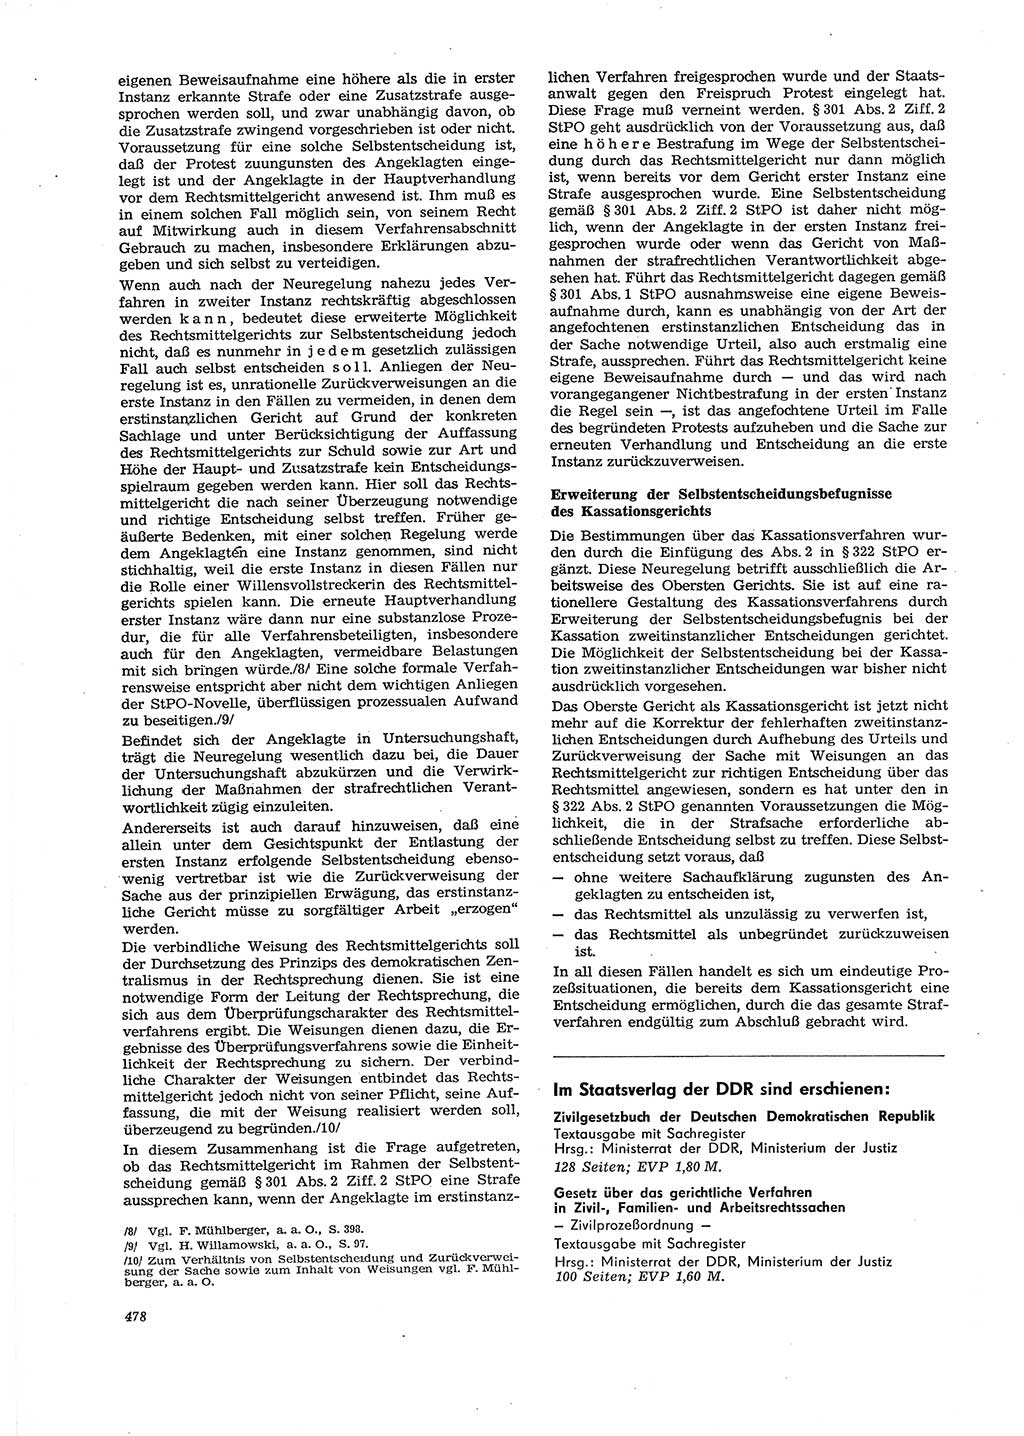 Neue Justiz (NJ), Zeitschrift für Recht und Rechtswissenschaft [Deutsche Demokratische Republik (DDR)], 29. Jahrgang 1975, Seite 478 (NJ DDR 1975, S. 478)